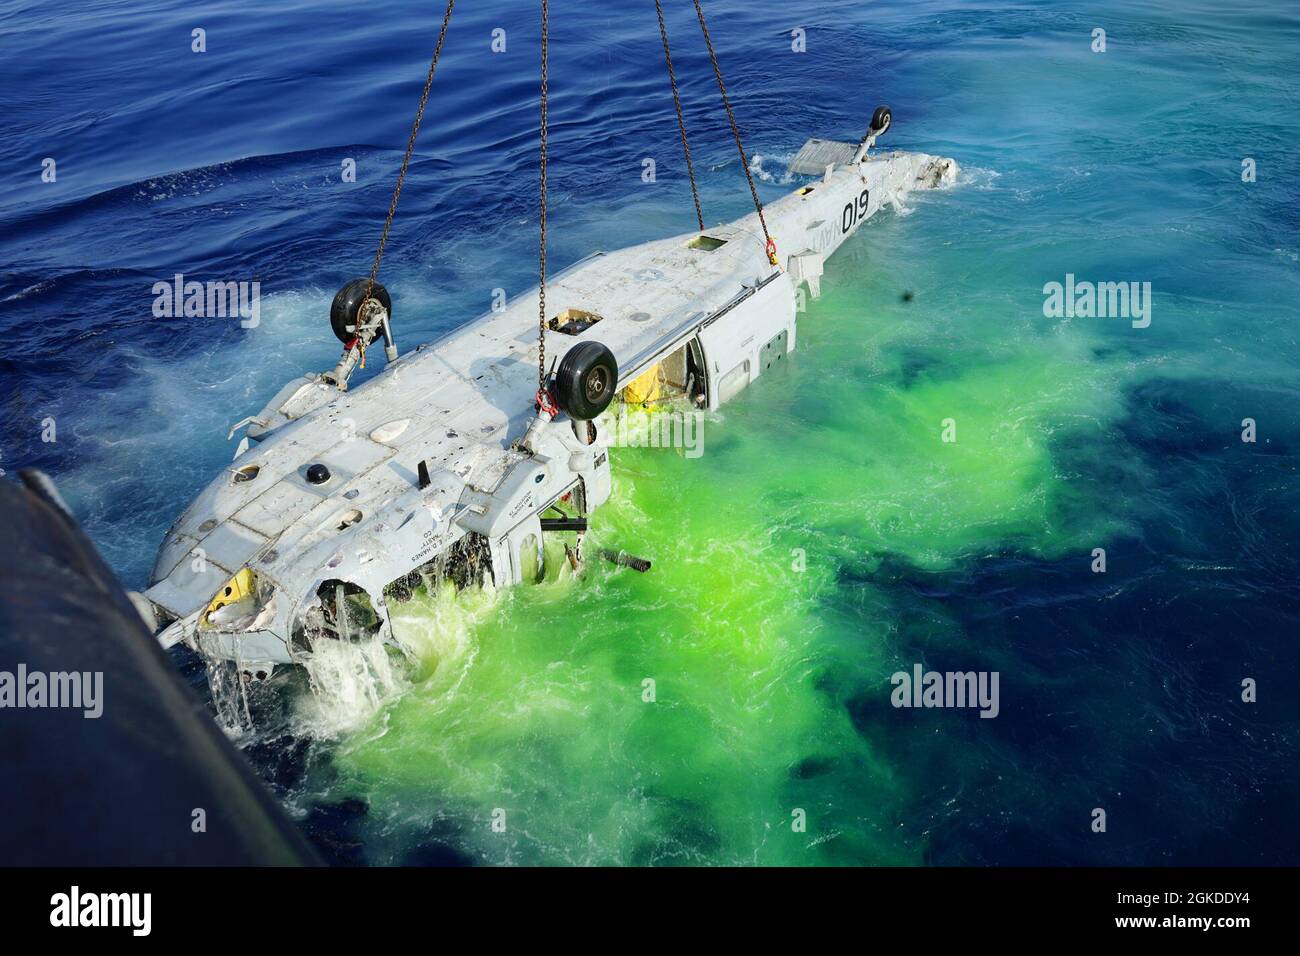 NORTH PACIFIC OCEAN 19 marzo 2021 un MH-60S che si è schiantato in mare nel gennaio 2020 libera la superficie dopo un assenso di nove ore da profondità record. Il marcatore di colore marino dai sacchi di ricerca e recupero con registrazione ad acqua (SAR) degli aeromobili si sciacquano verso il mare durante un'operazione di recupero a marzo. 19, 2021. I marcatori di colorante marini sono un'alternativa sicura ed efficace alle svasature e al fumo per le operazioni SAR. L'operazione di recupero, coordinata dagli investigatori del centro di sicurezza navale (NAVSAFECEN) e dal Supervisore di Salvage e Diving, offre l'opportunità agli investigatori NAVSAFECEN di esaminare le critiche Foto Stock